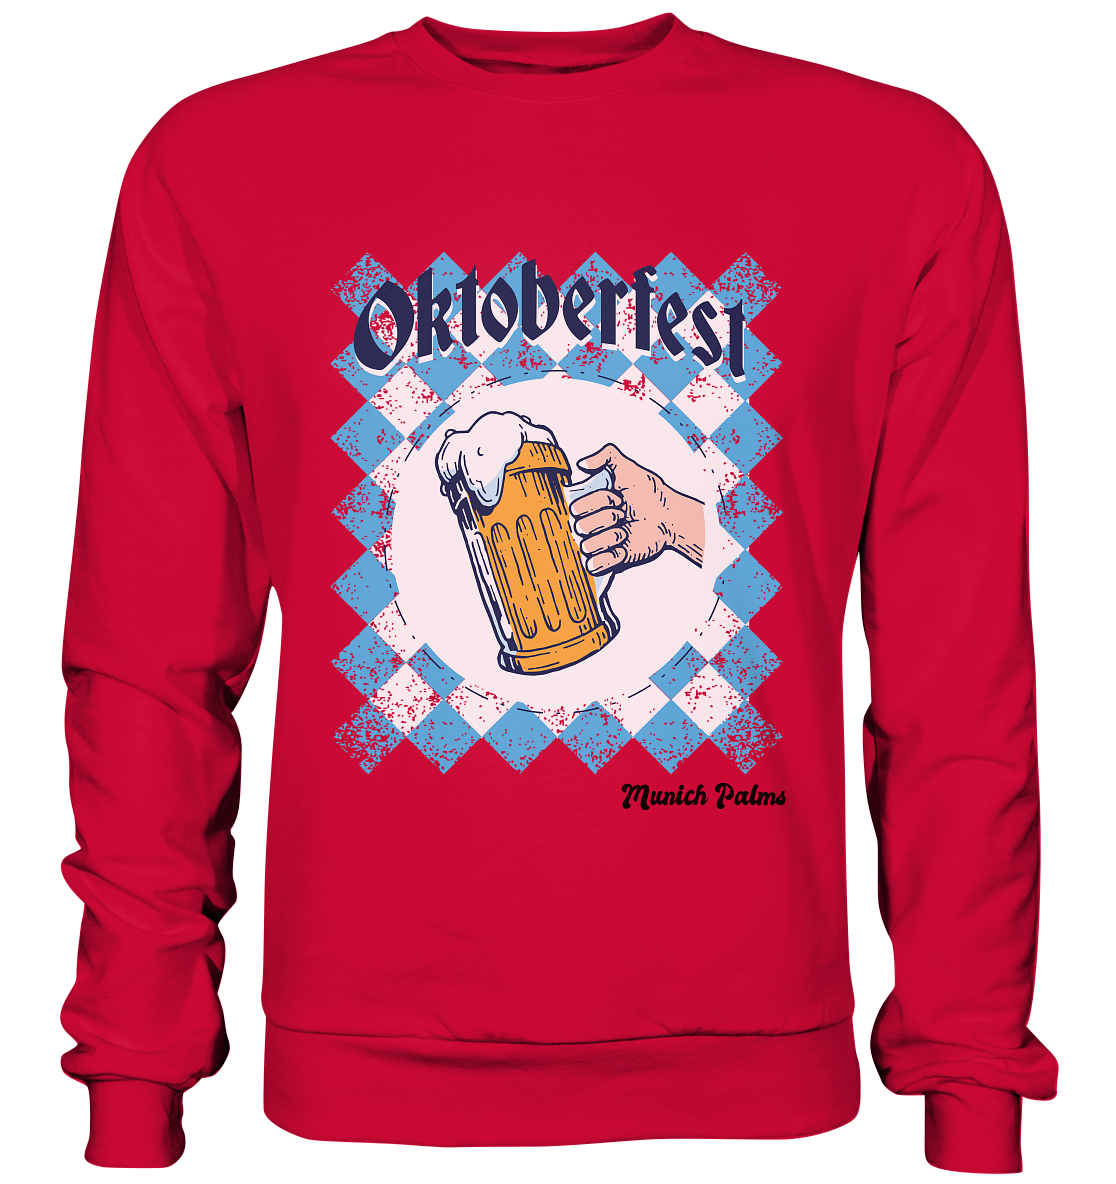 Oktoberfest Maßkrug in bayrischer Raute Design by Munich Palms  - Basic Sweatshirt